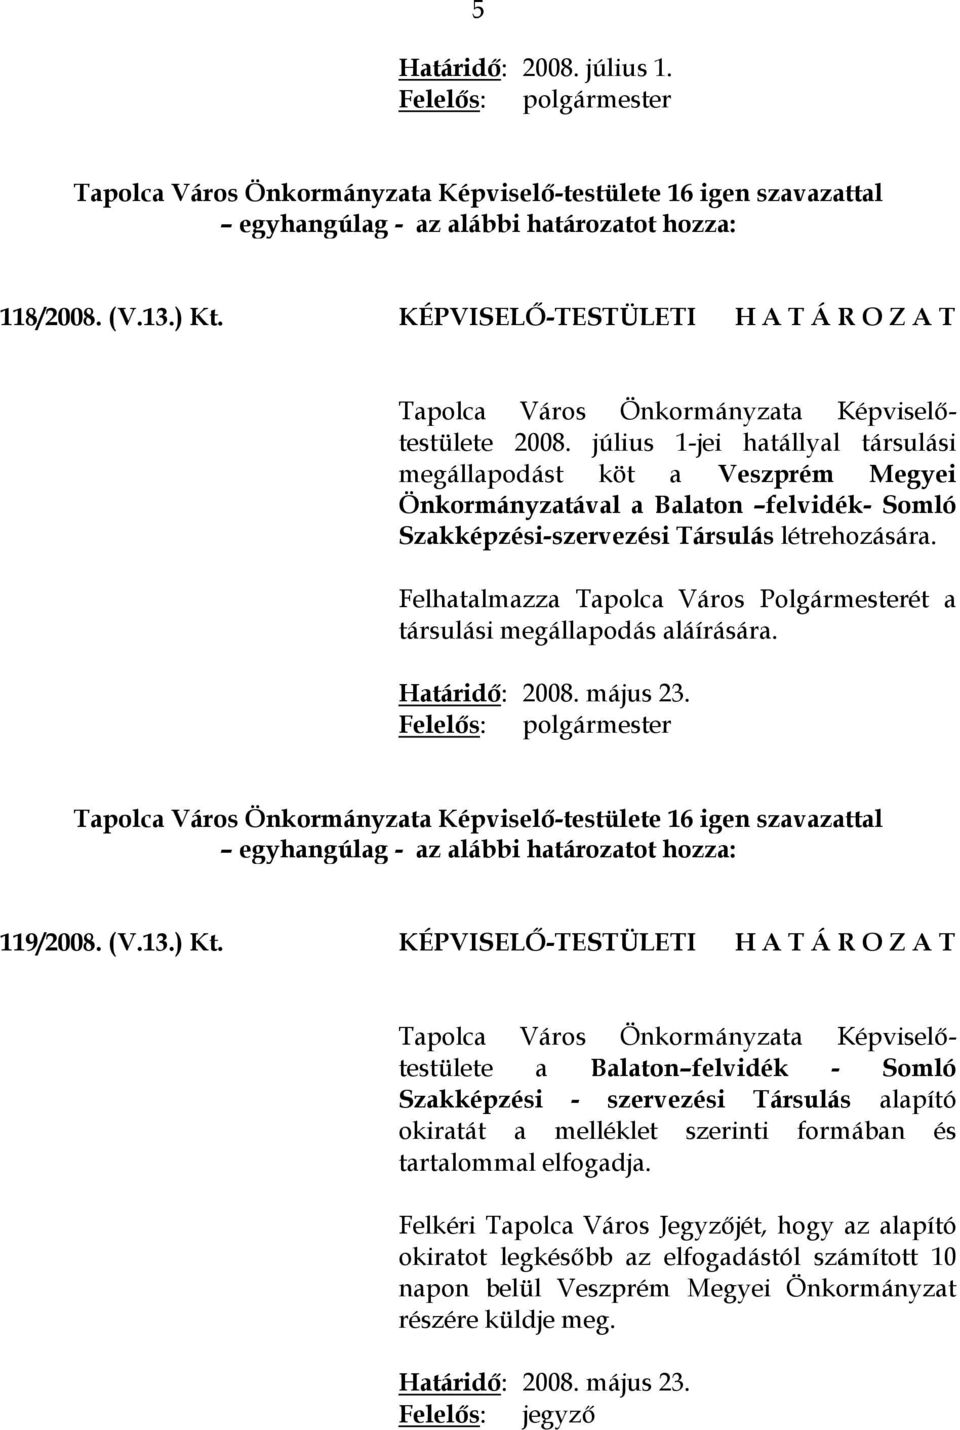 Felhatalmazza Tapolca Város Polgármesterét a társulási megállapodás aláírására. Határidő: 2008. május 23. Tapolca Város Önkormányzata Képviselő-testülete 16 igen szavazattal 119/2008. (V.13.) Kt.